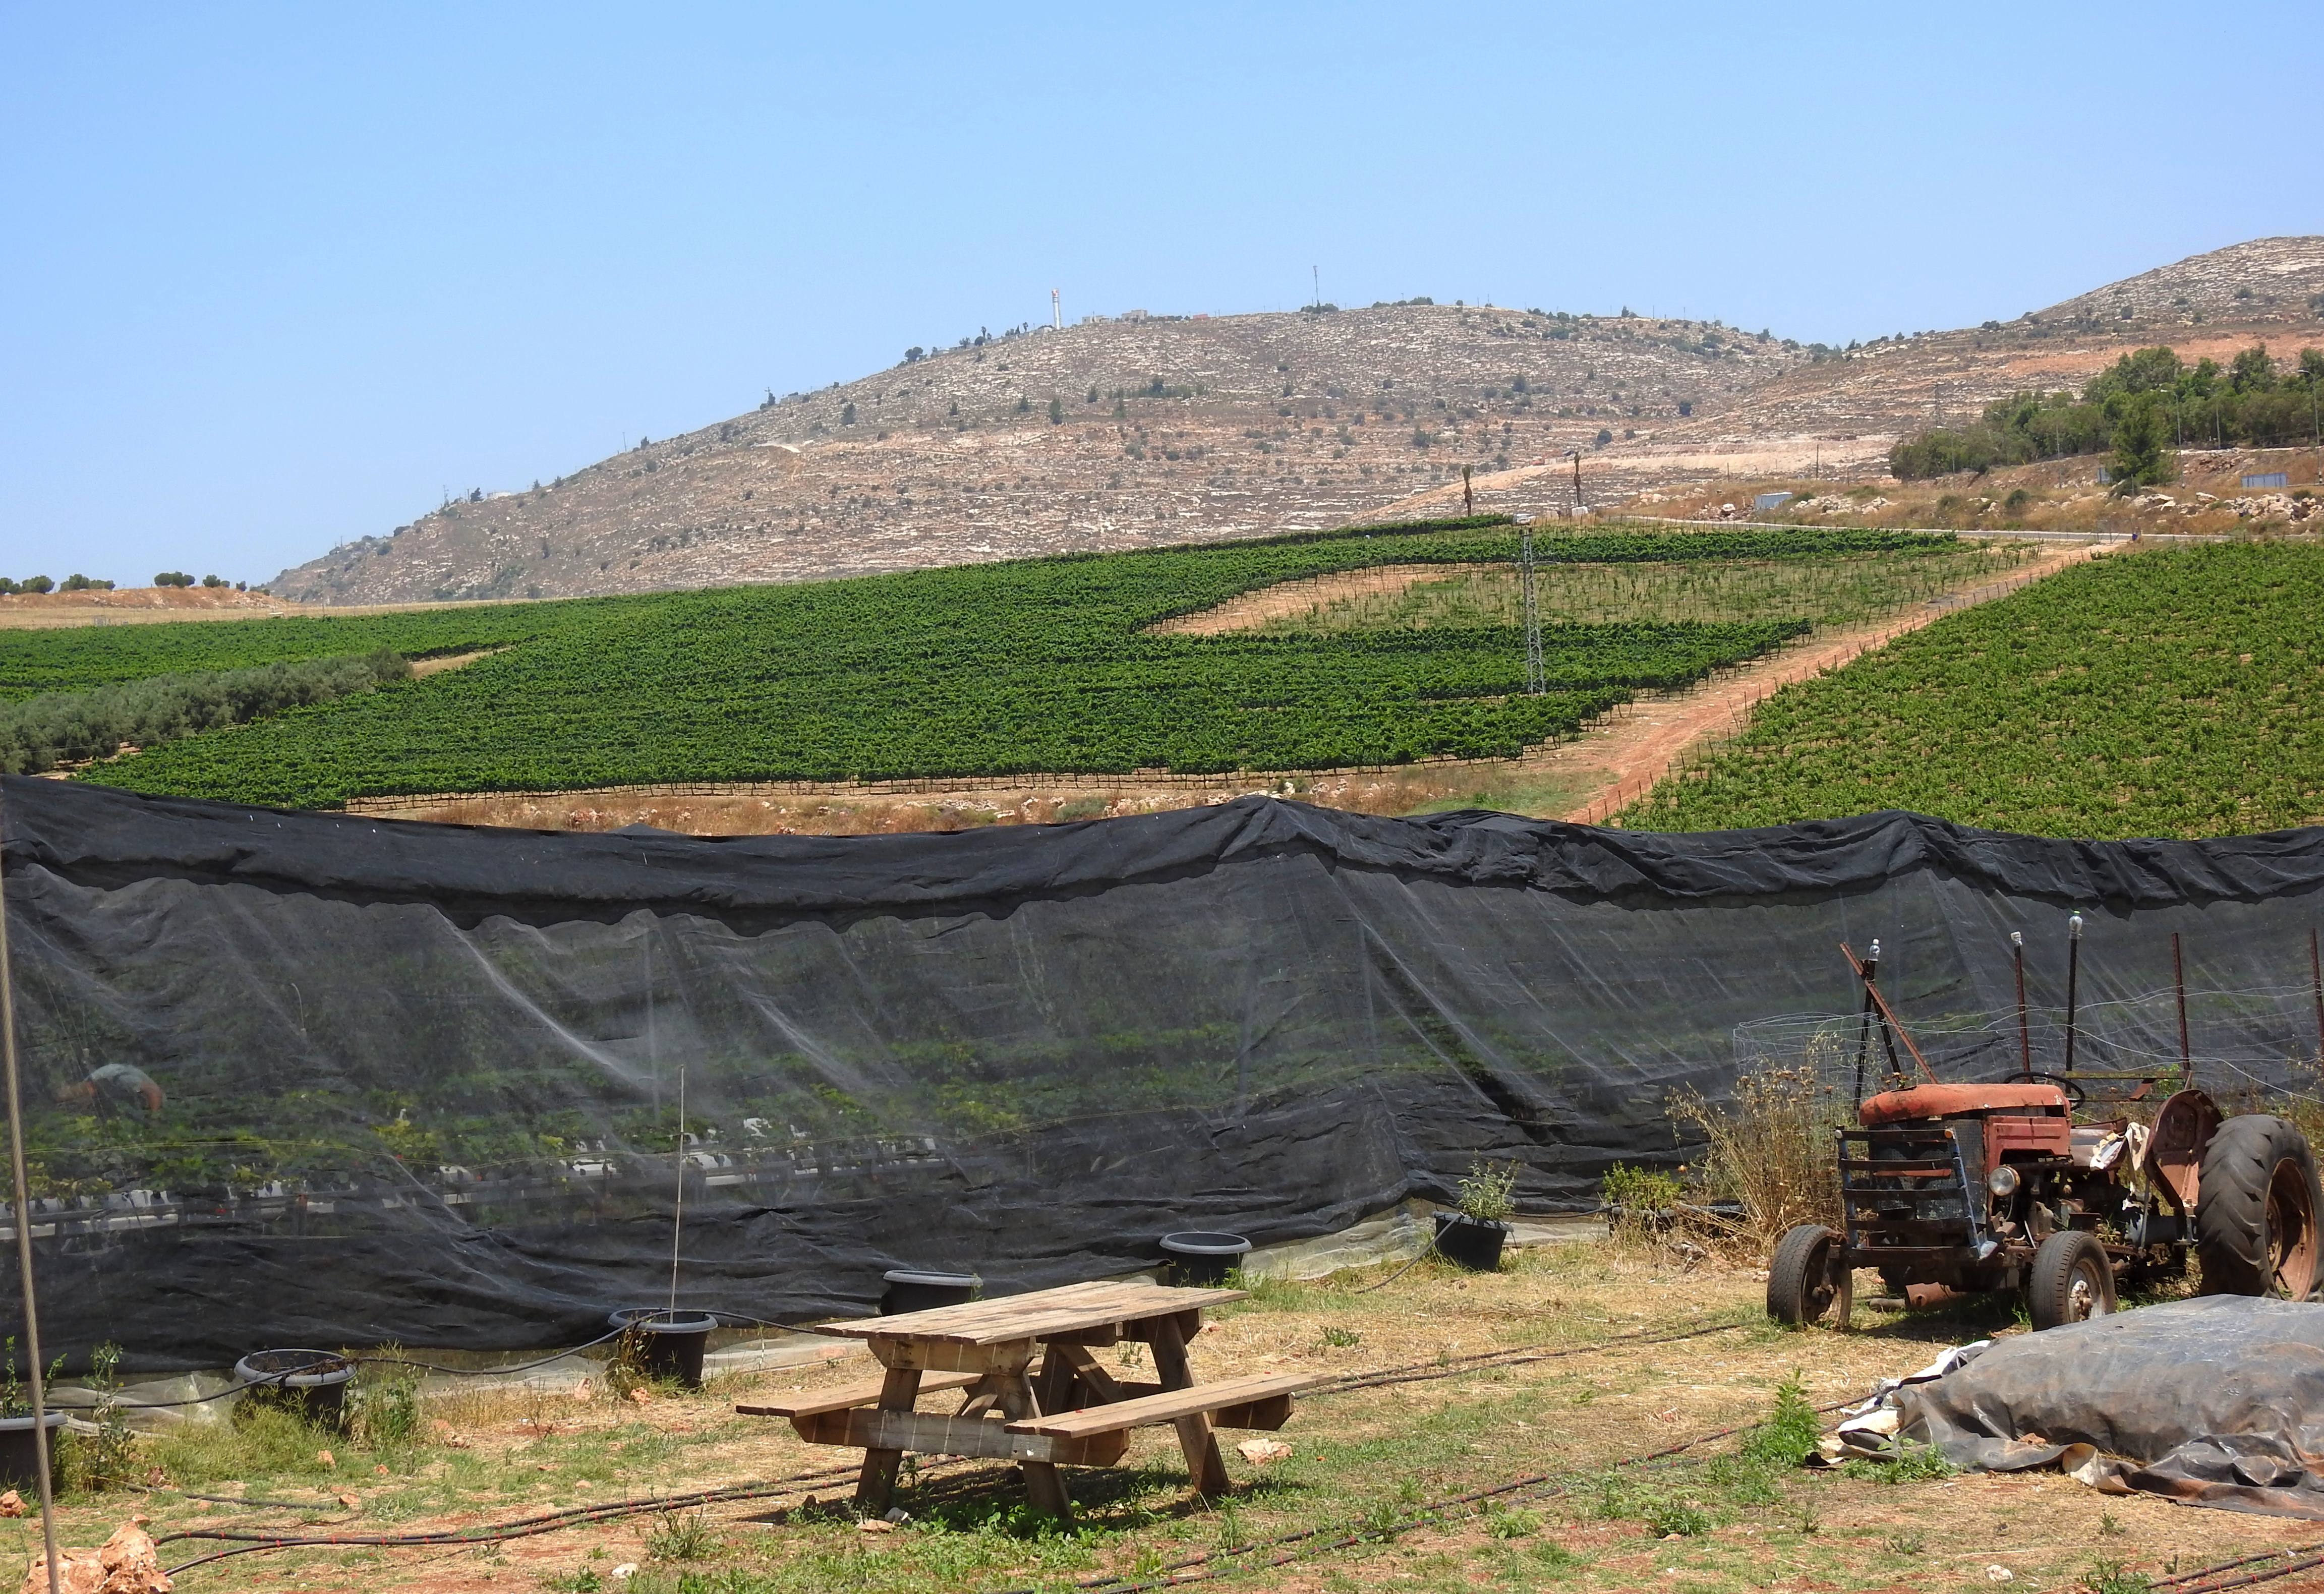 Bikurei Shiloh backdropped by grapevines